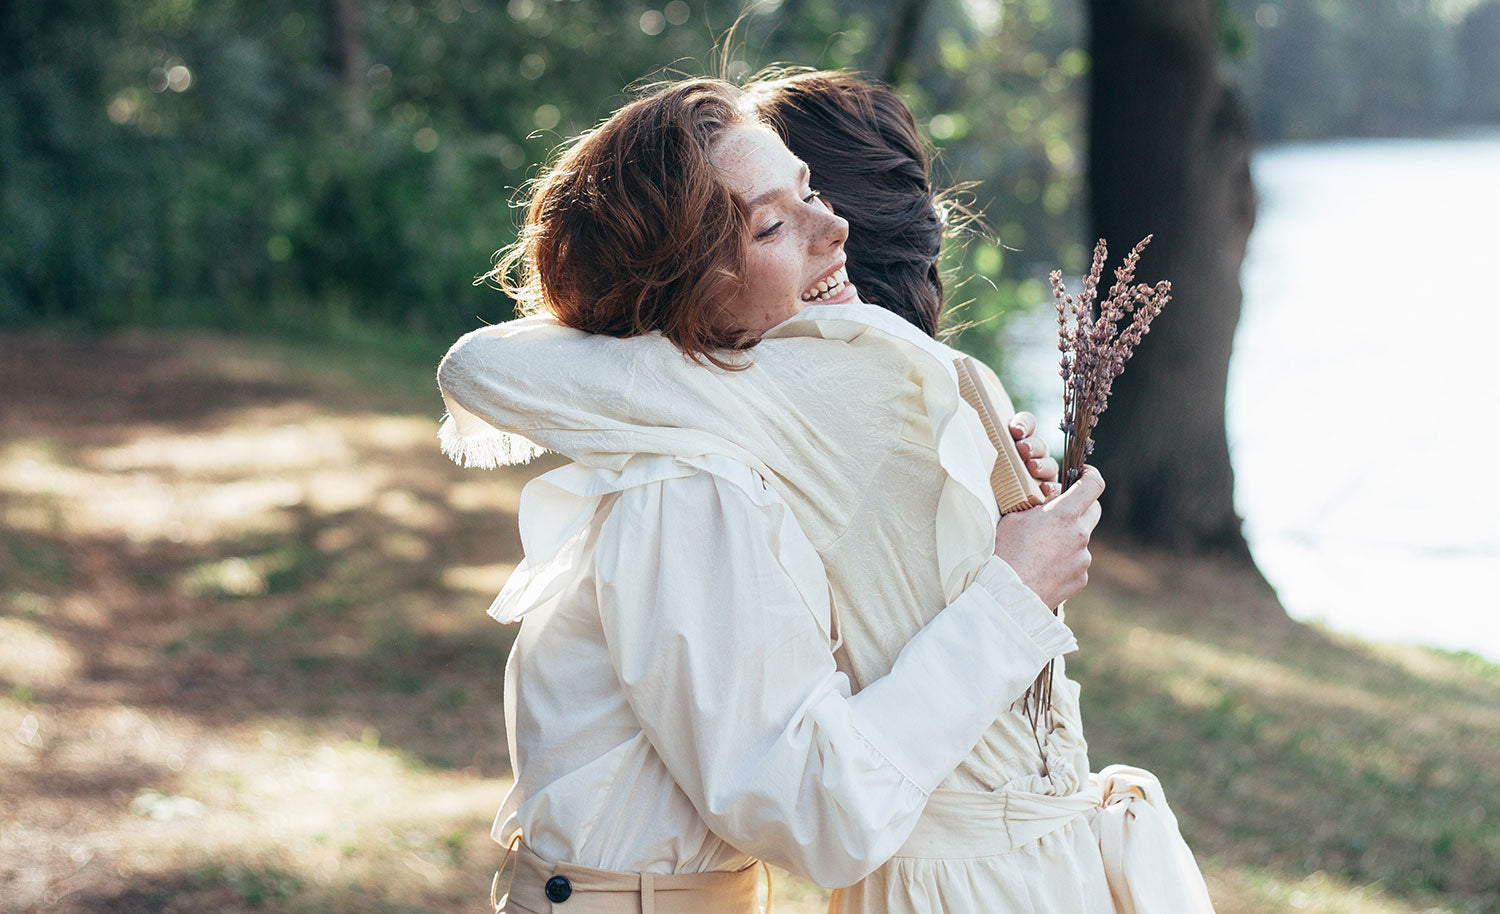 Two Women Hugging